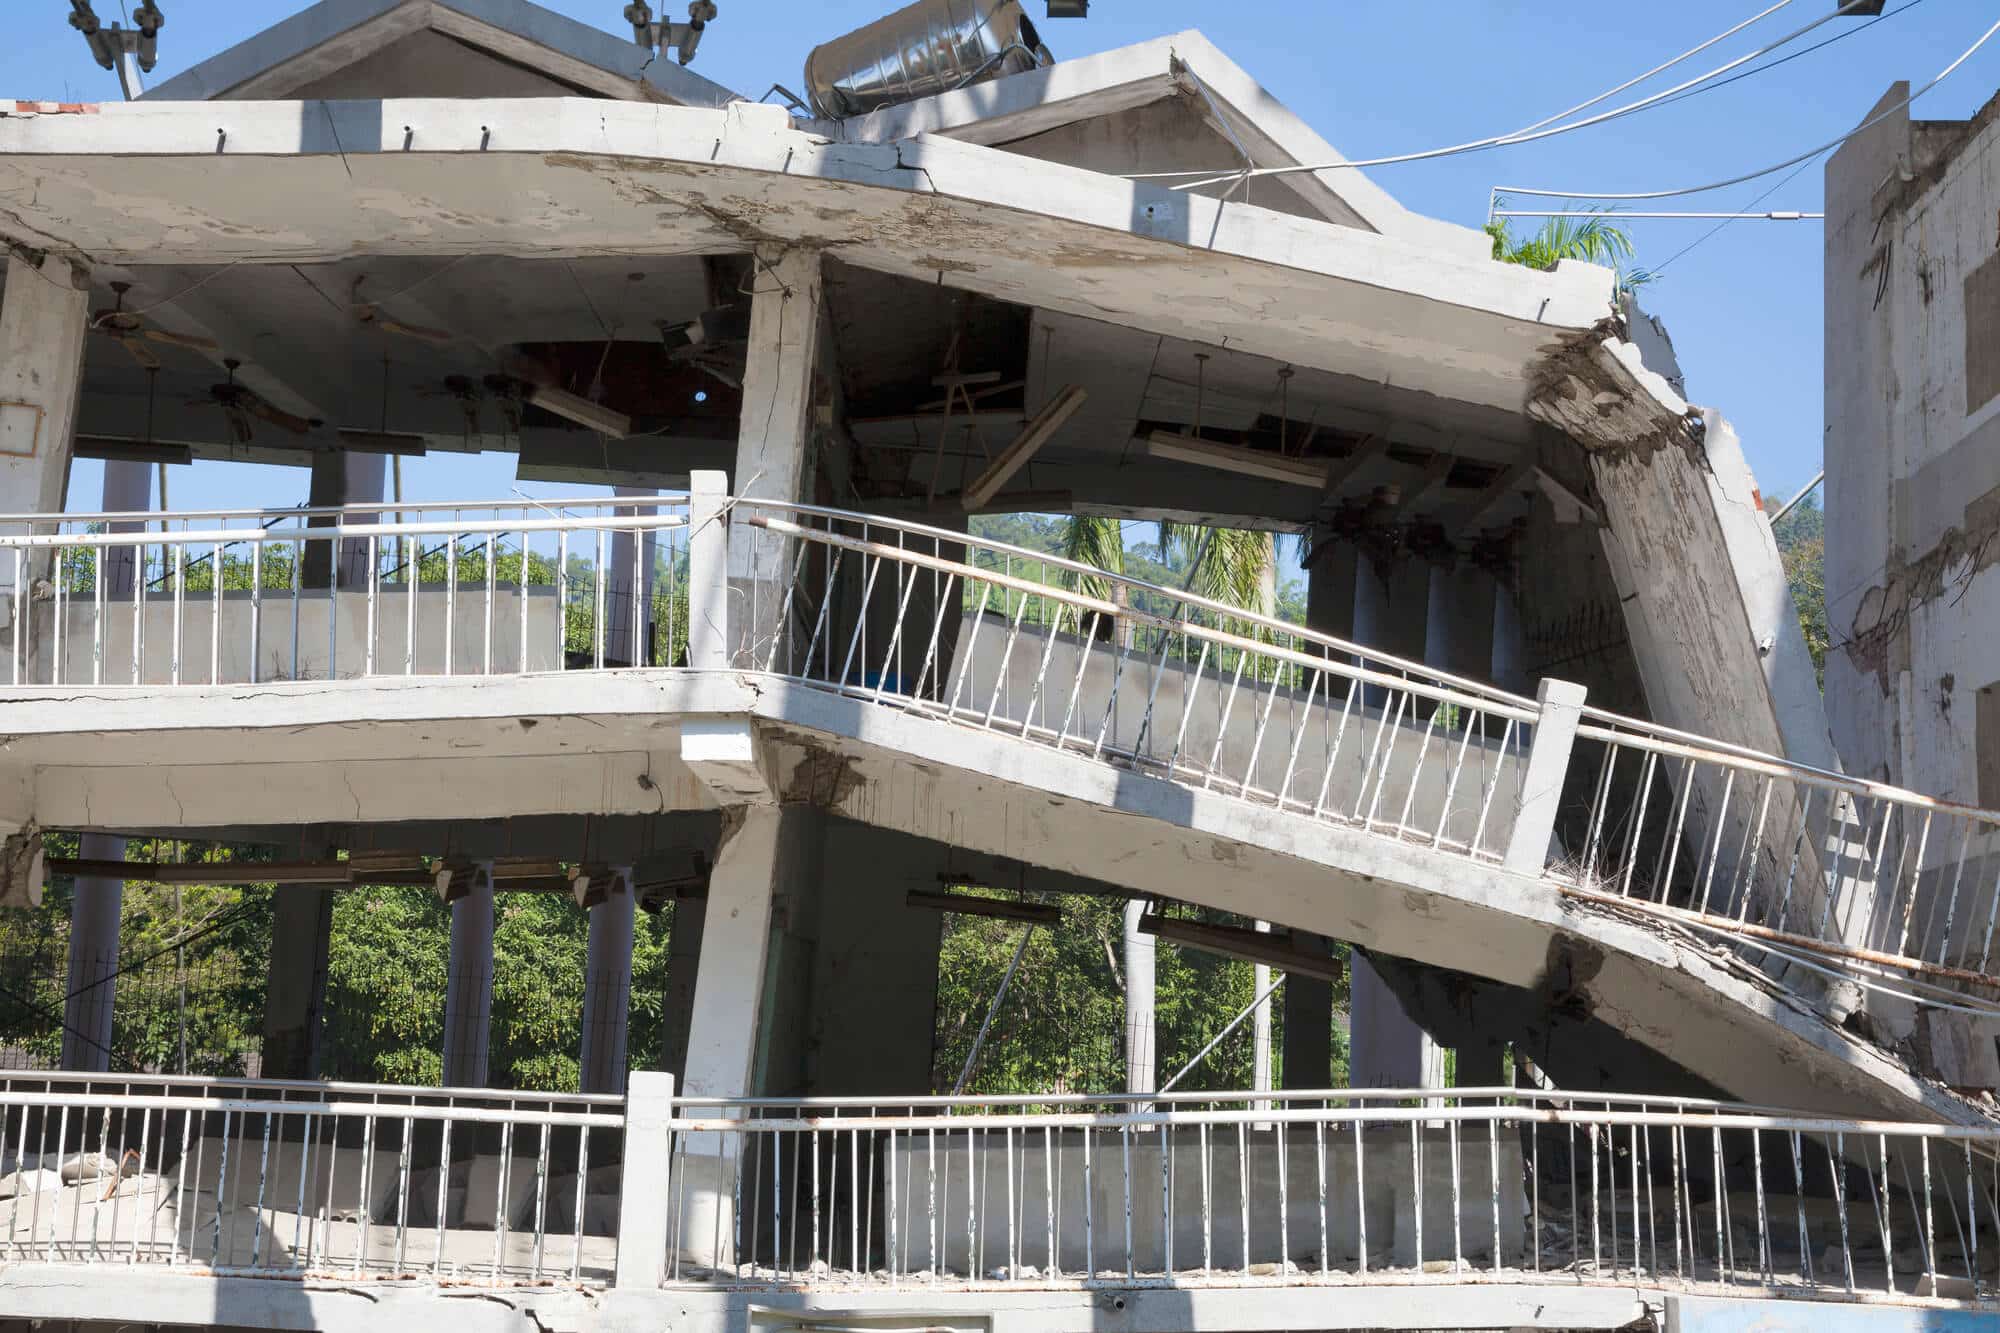 מבנה שנהרס ברעידת אדמה.  <a href="https://depositphotos.com. ">המחשה: depositphotos.com</a>